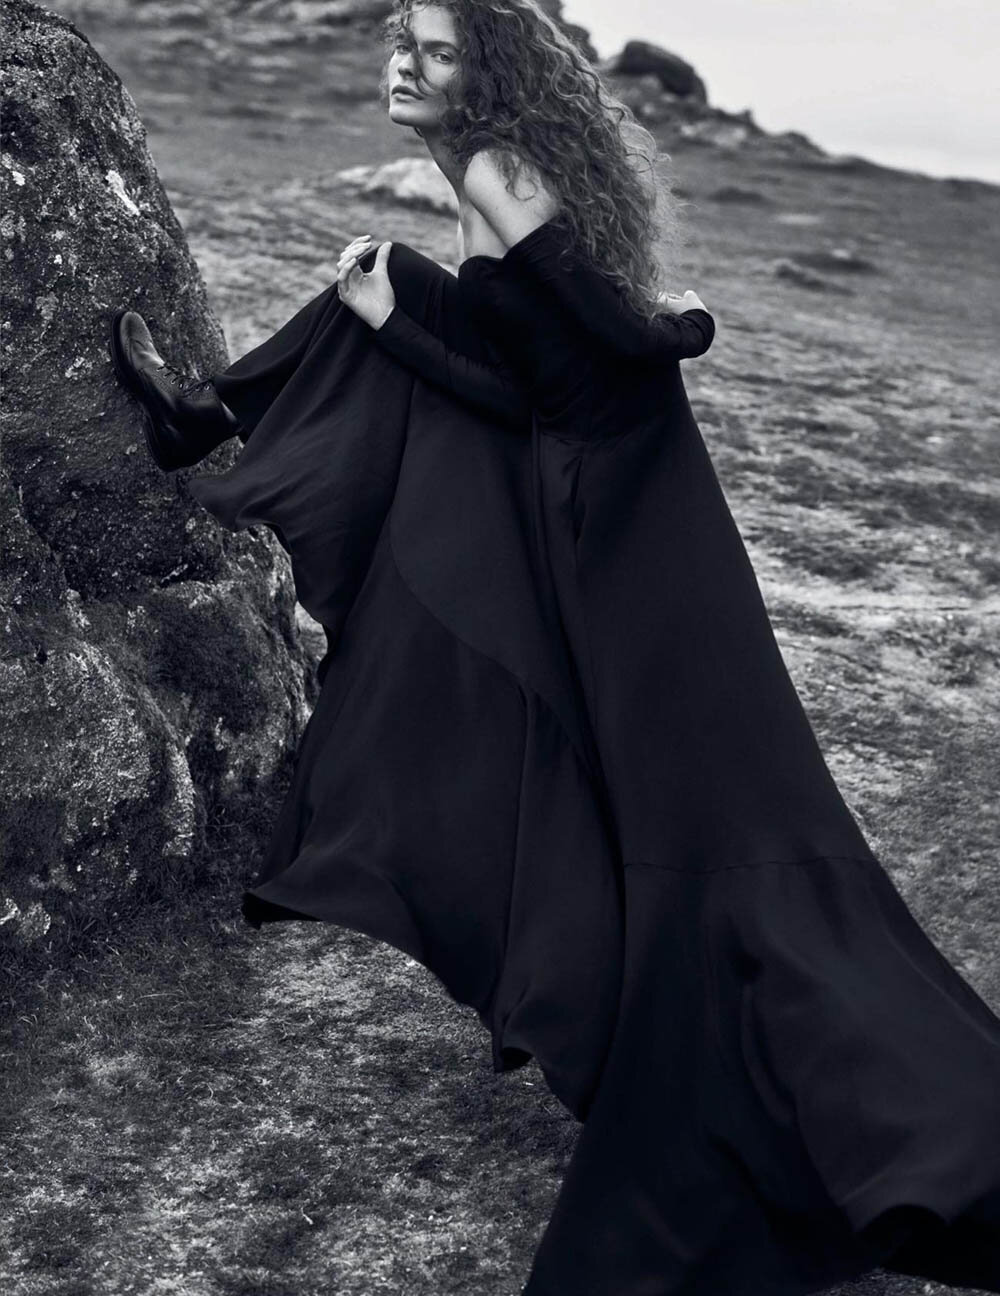 Carolina-Burgin-by-Emma-Tempest-for-Vogue-Spain-October-2019-8.jpg